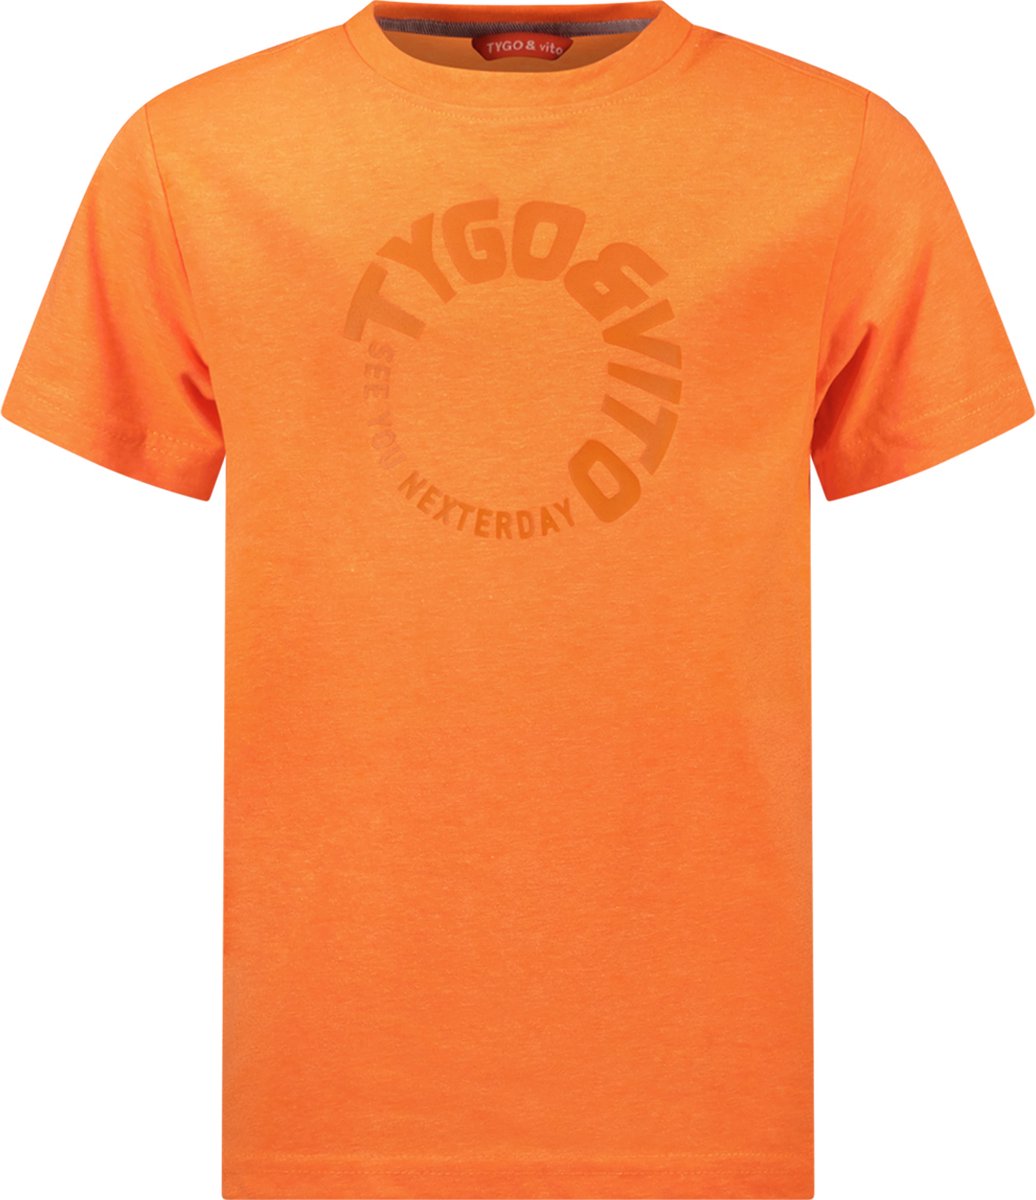 TYGO & vito X402-6426 Jongens T-shirt - Neon Orange - Maat 122-128 - TYGO & vito